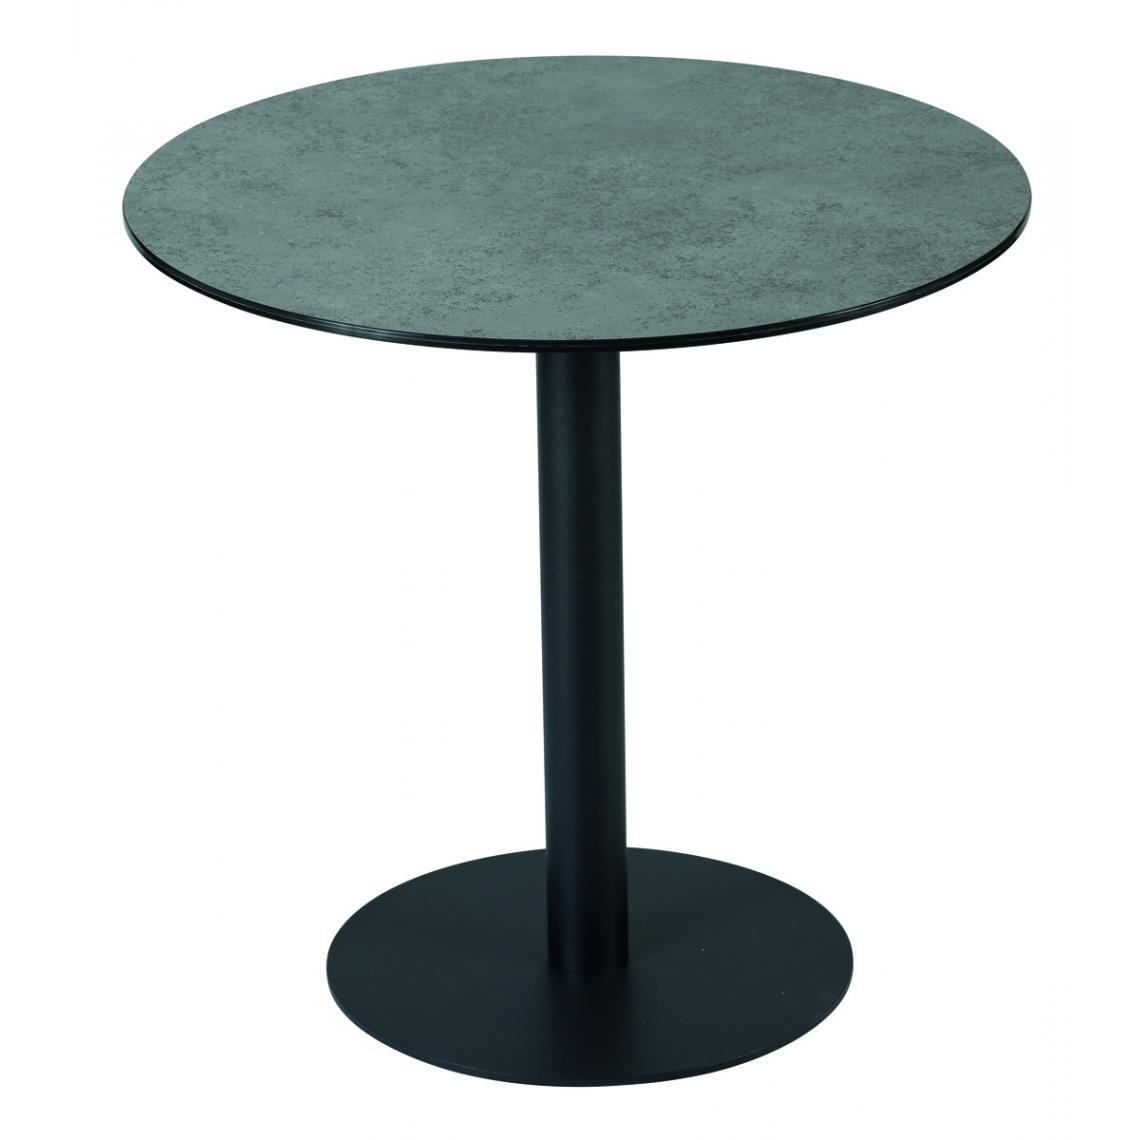 Pegane - Table ronde en verre trempé / céramique coloris anthracite mat - diamètre 80 x hauteur 76 cm - Consoles